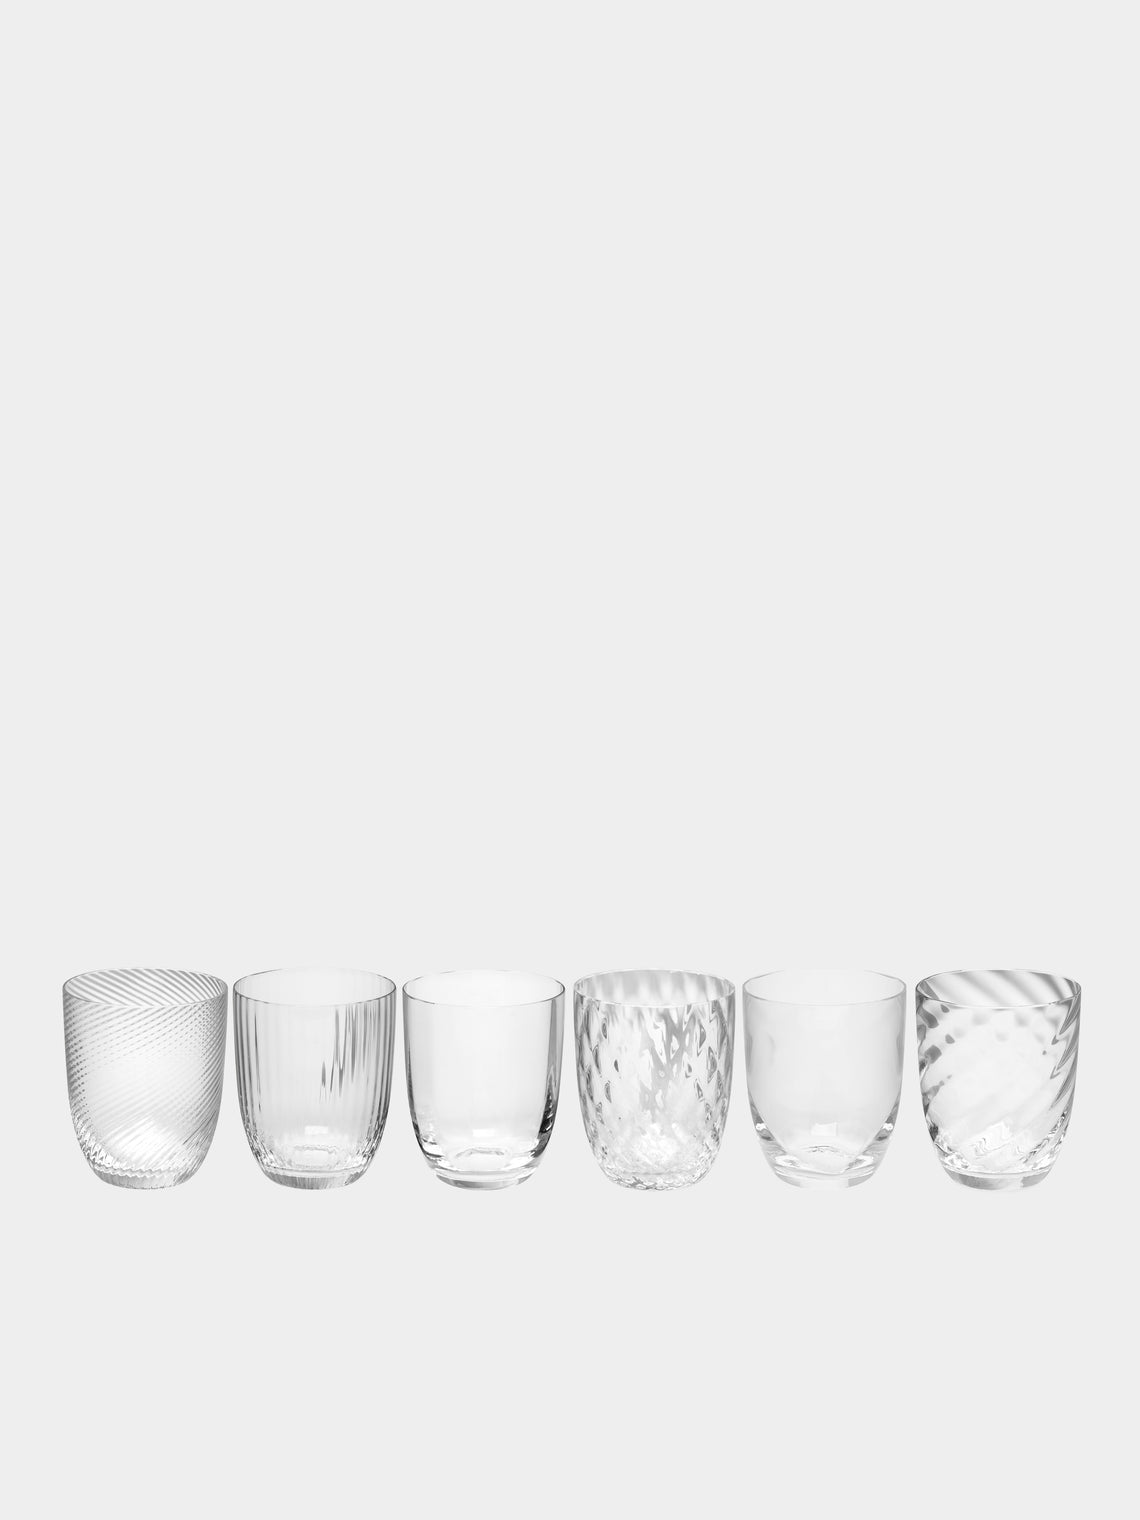 NasonMoretti - Tolomeo Hand-Blown Murano Glass Tumblers (Set of 6) -  - ABASK